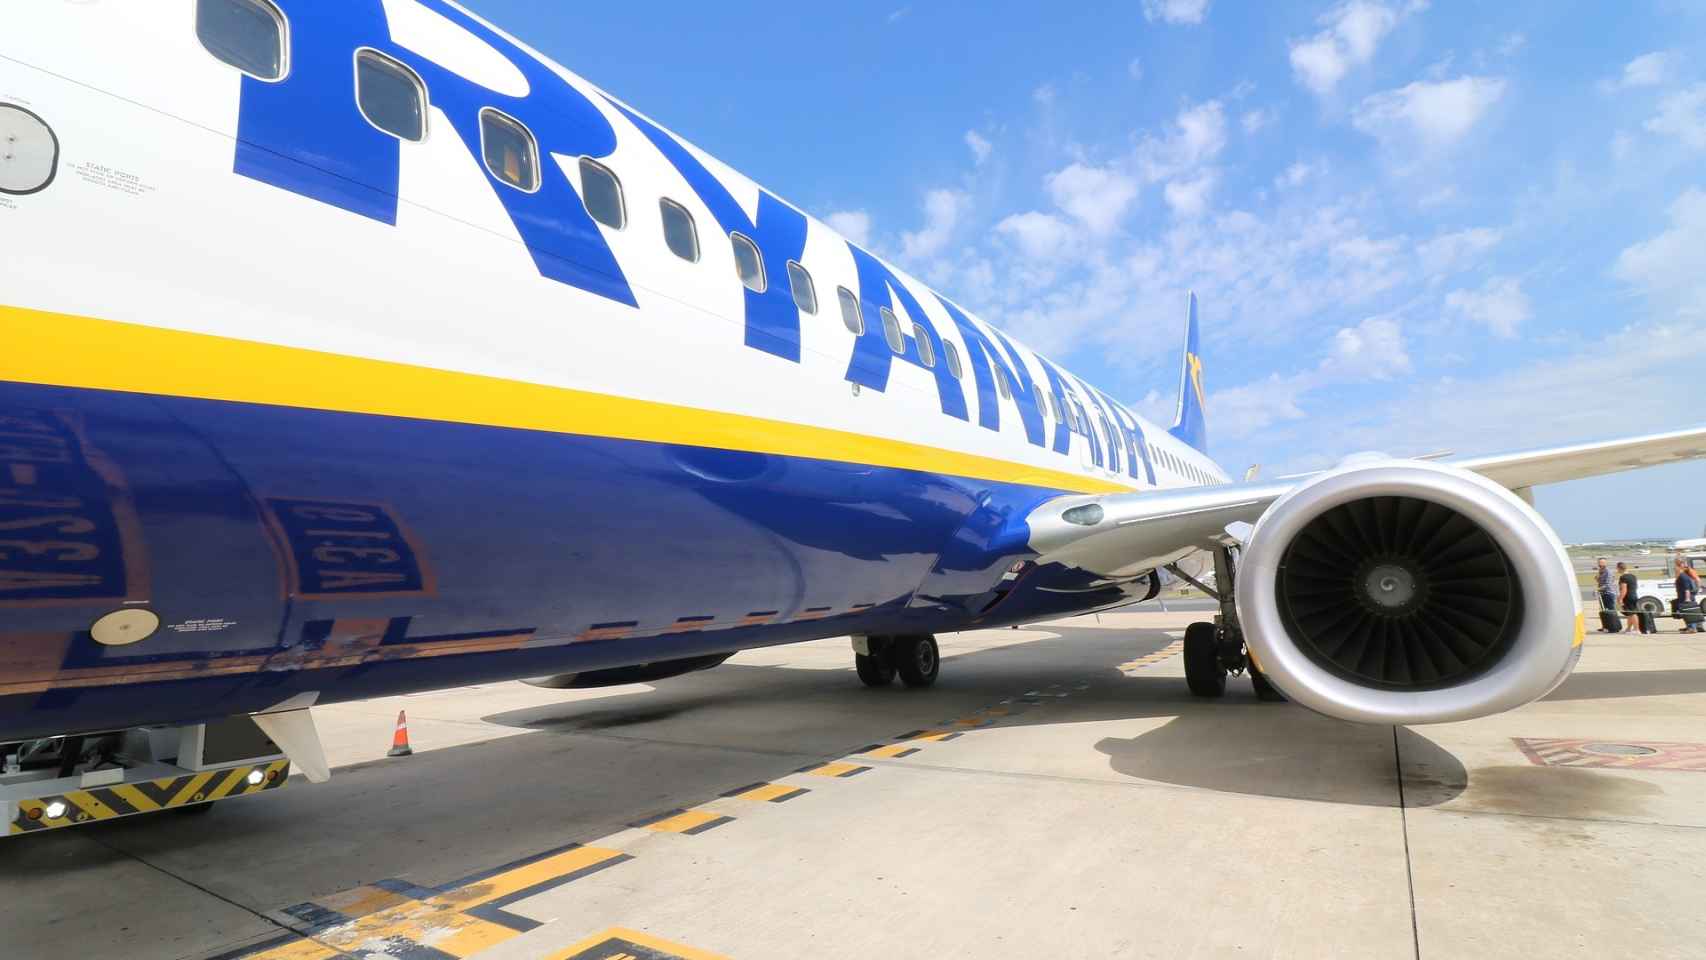 La Covid pone en peligro el reinado en los cielos de Ryanair y su modelo ‘low cost’